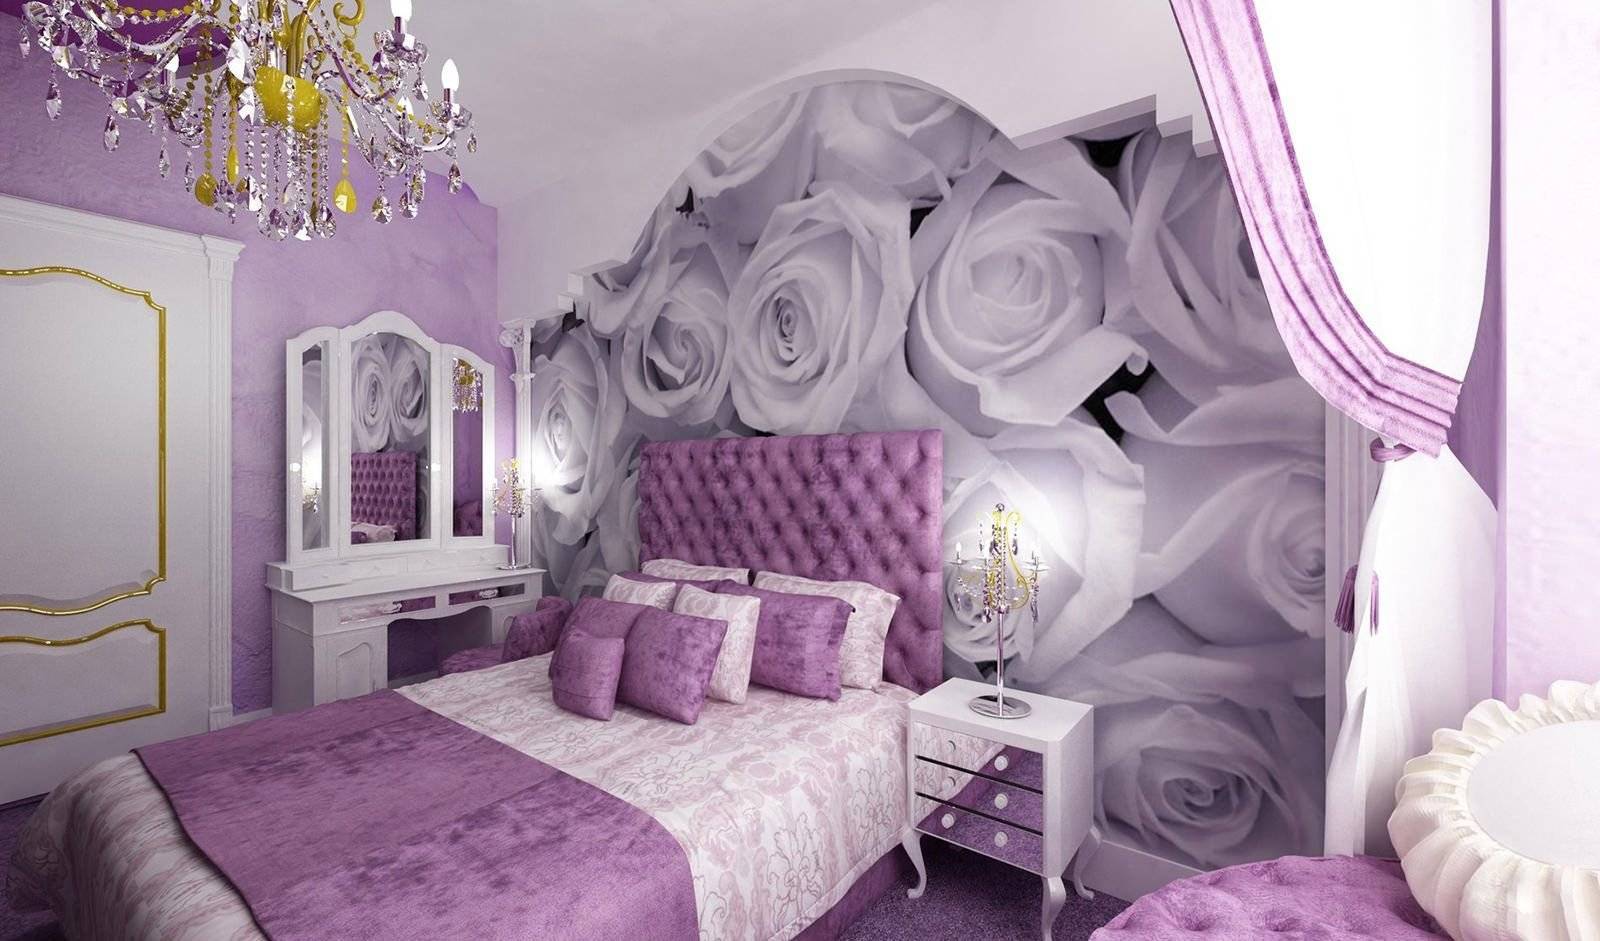 Спальня в сиреневых или фиолетовых тонах - сочетание цветов в интерьере, идеи дизайна с лавандовым, фиалковым, розовым, обзор вариантов с фото